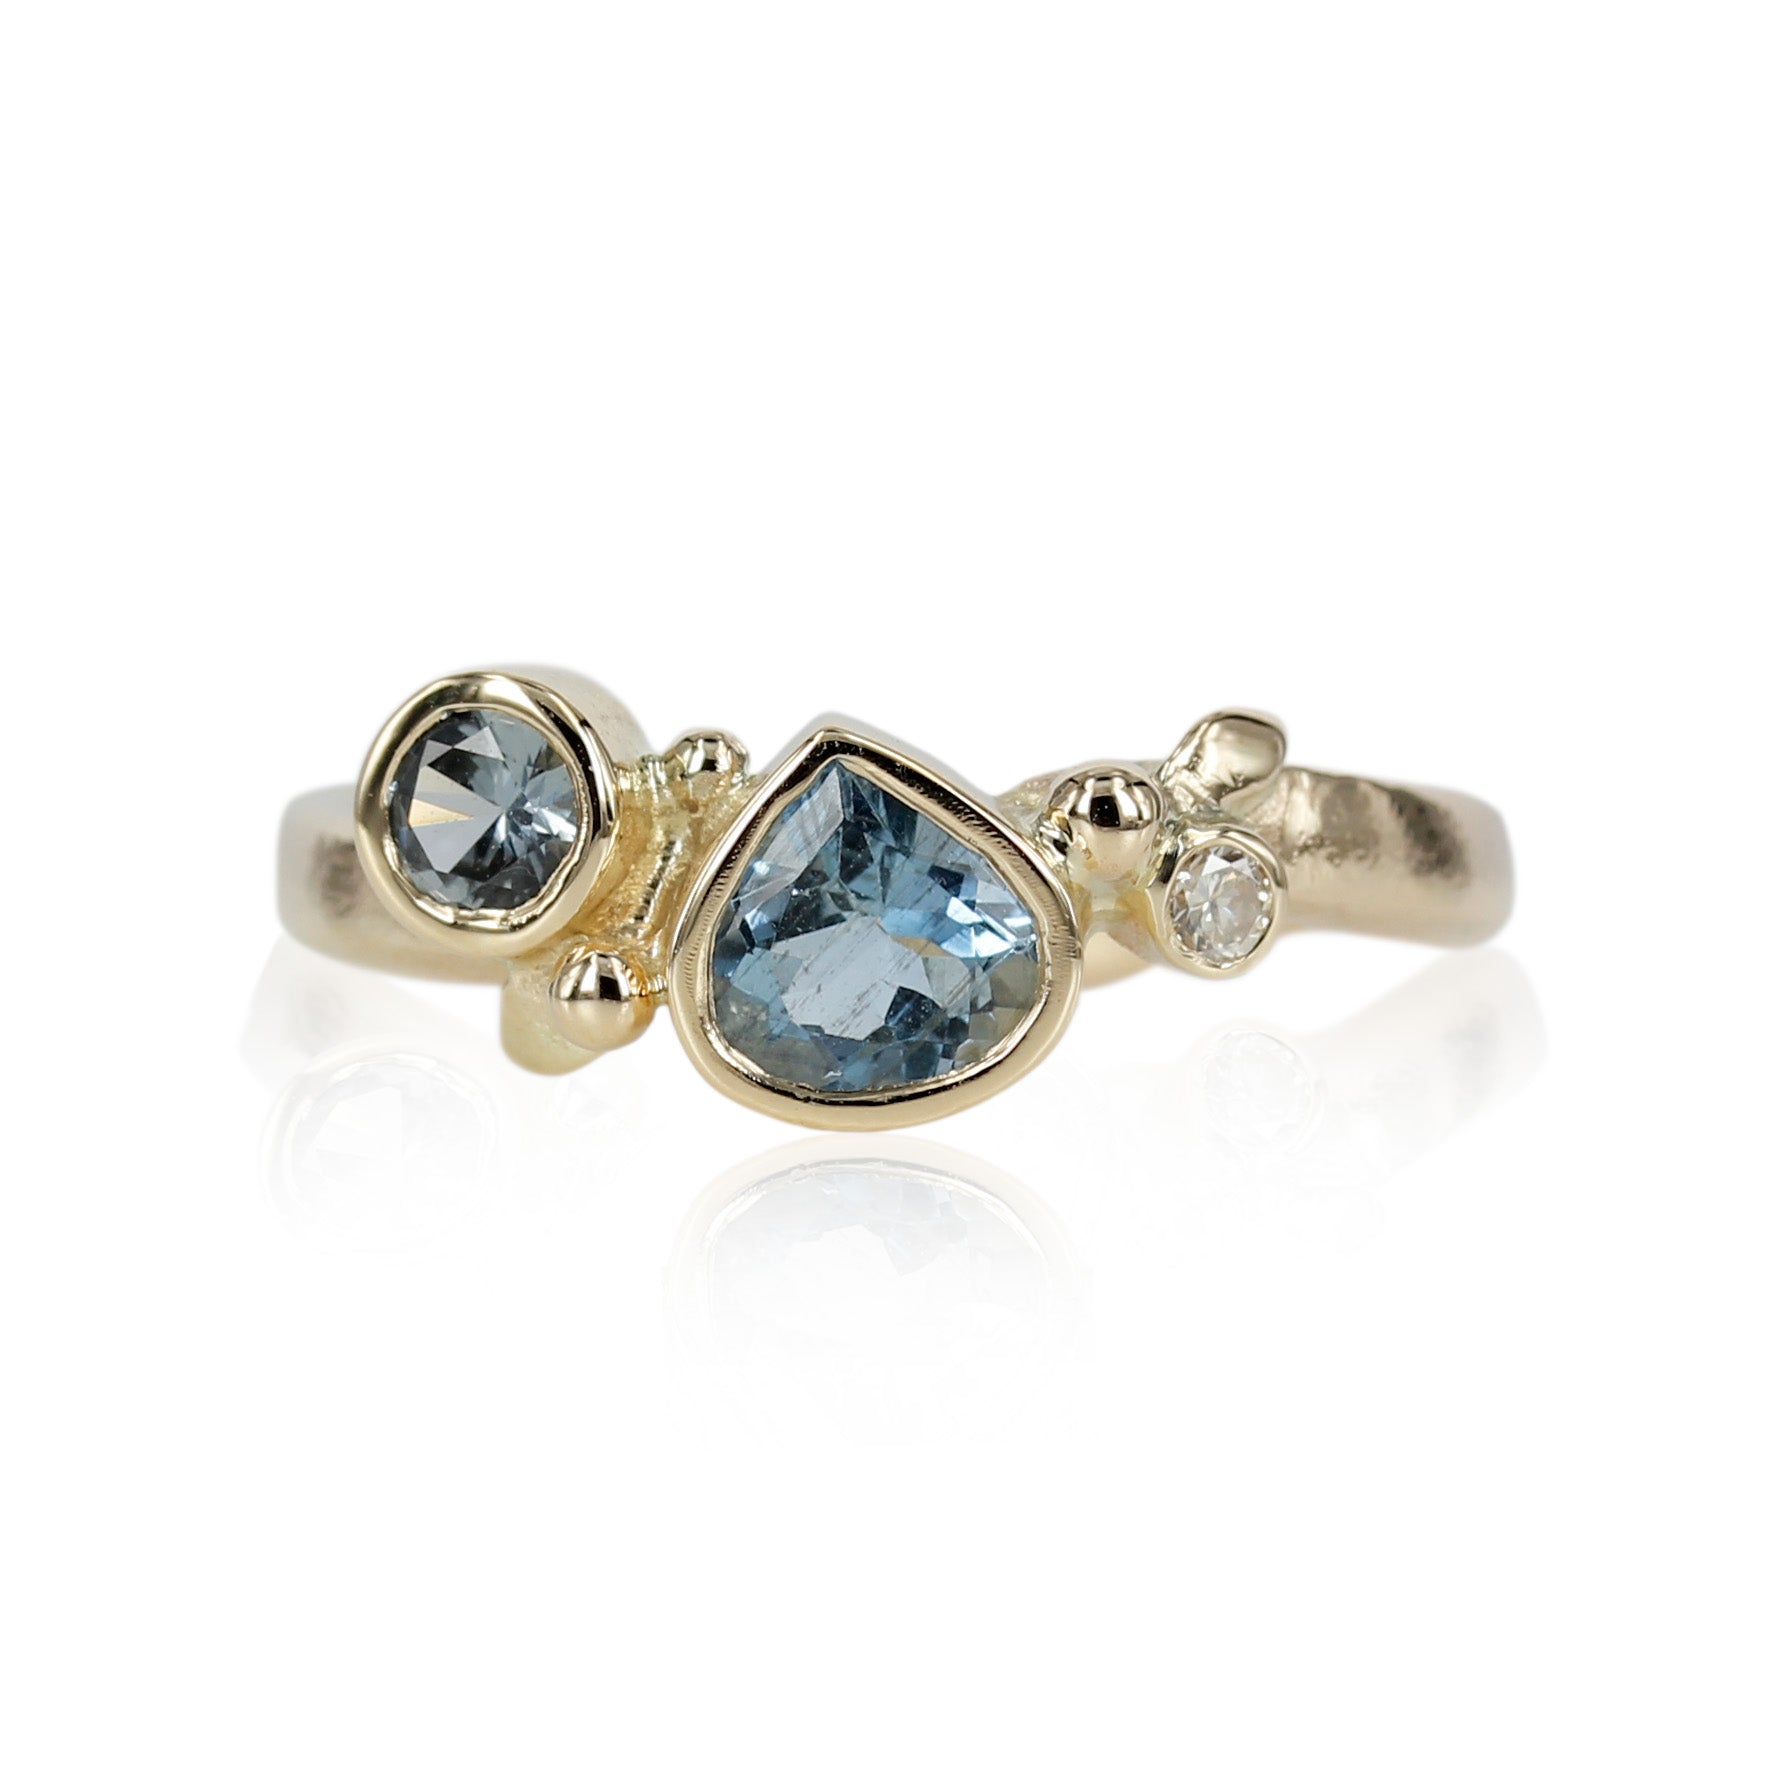 Smuk unika ring skabt med smuk lyseblå safir den smukke dråbe bliver elegant omkranset af turmalin og champagne farvet brillant.  En fantastisk ring der kan bærer både til hverdag og til fest.